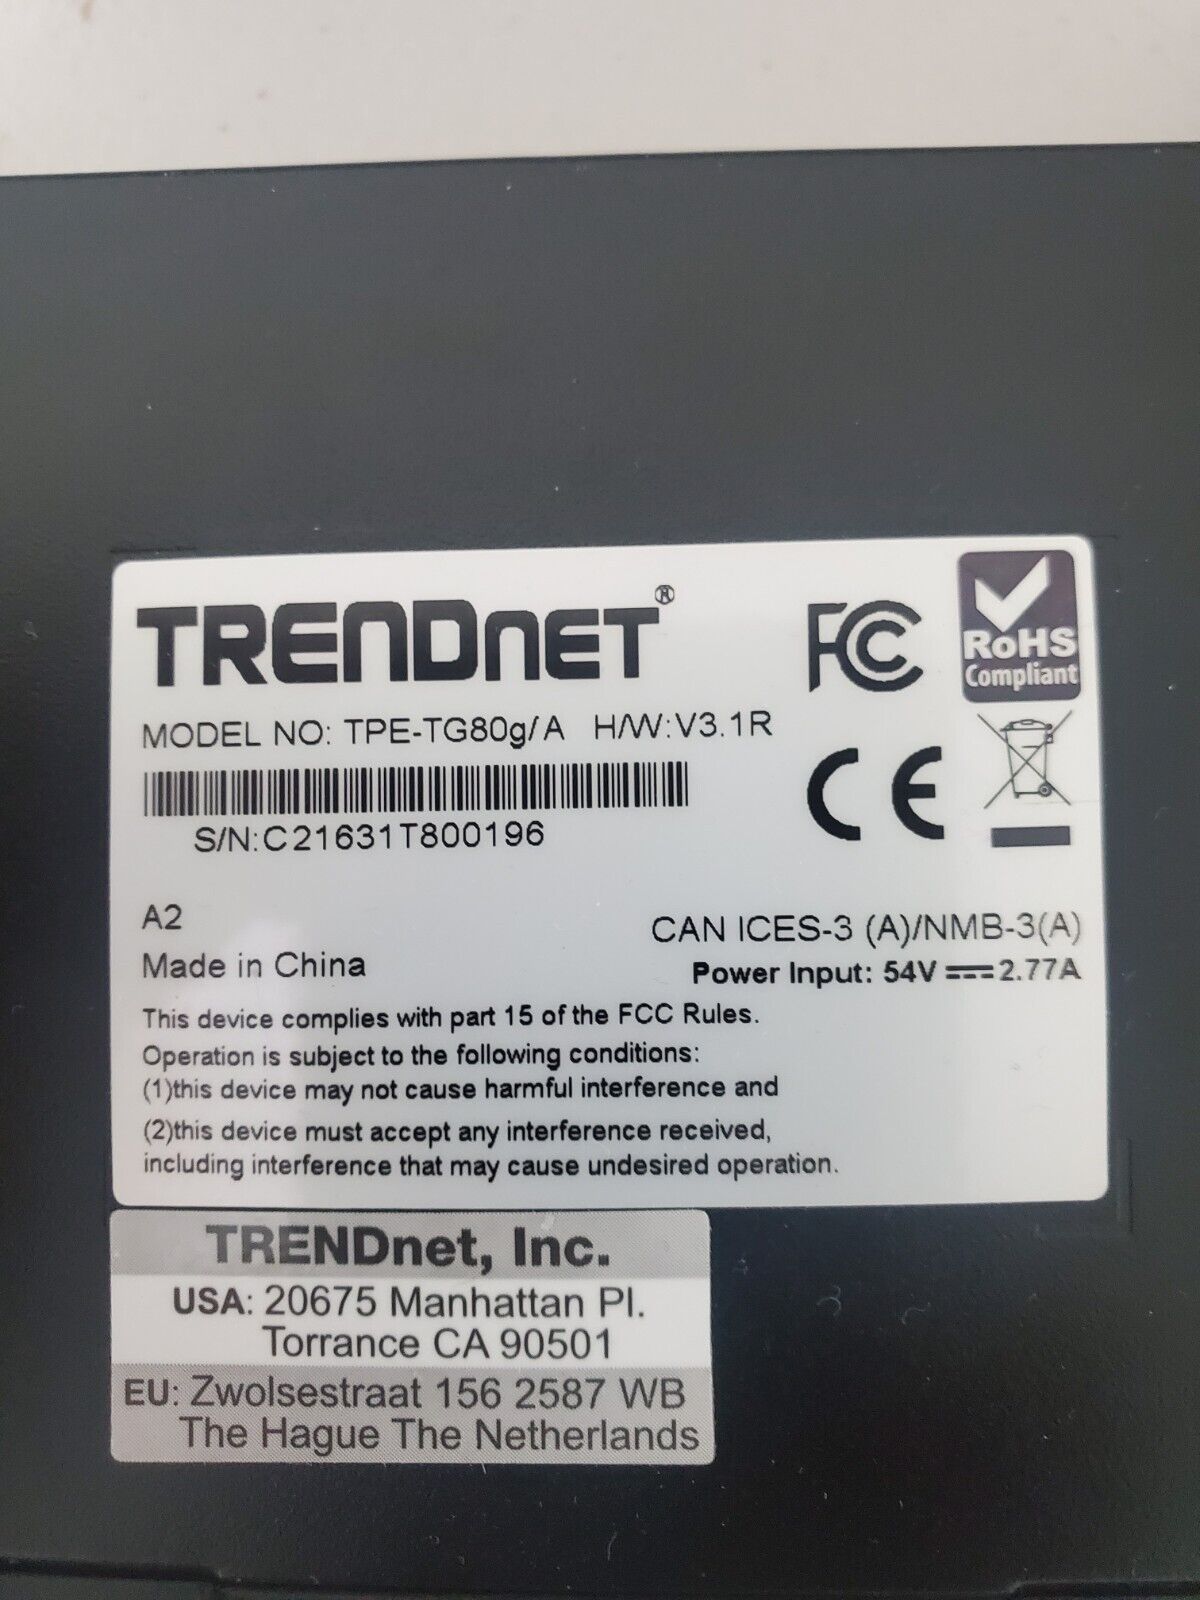 TRENDnet TPE-TG80g/A (H/W:V3.1R) 8-port Gigabit GREENnet PoE+ Switch